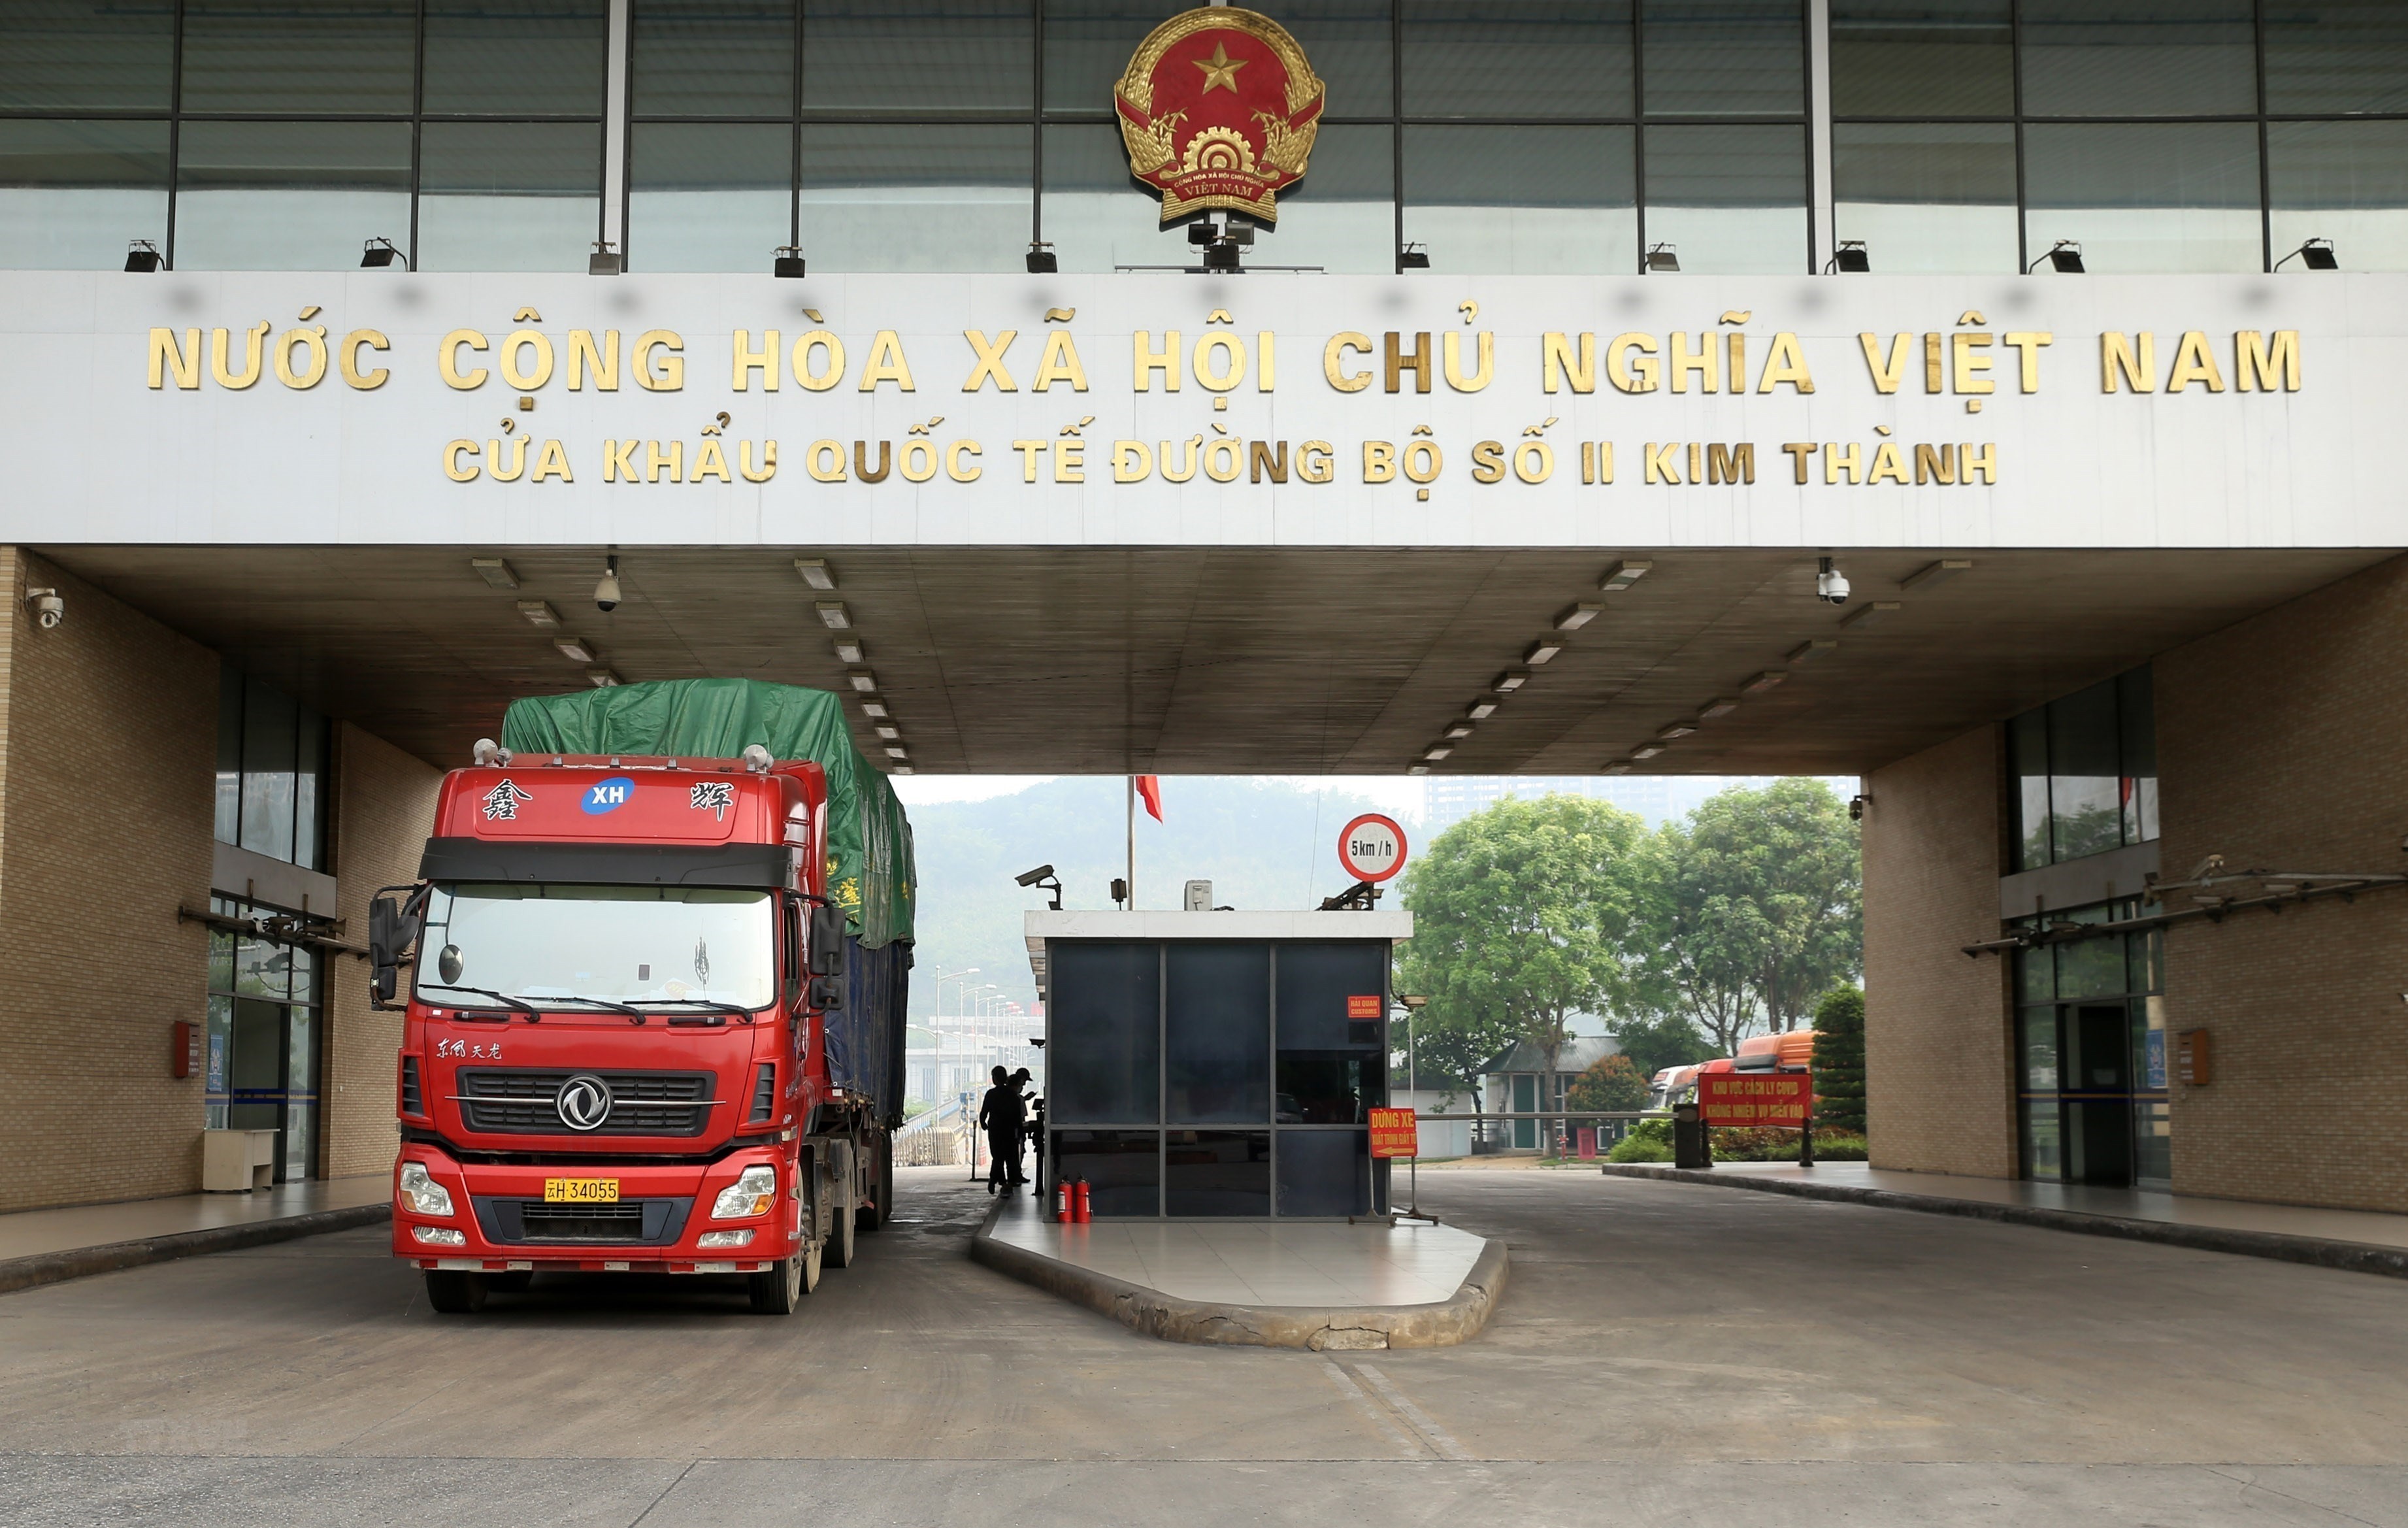 Ngày 8/11/2012: Cửa khẩu quốc tế đường bộ số II Kim Thành, thành phố Lào Cai thuộc cặp Cửa khẩu Quốc tế Lào Cai (Việt Nam) - Hà Khẩu (Trung Quốc) chính thức được vận hành. 